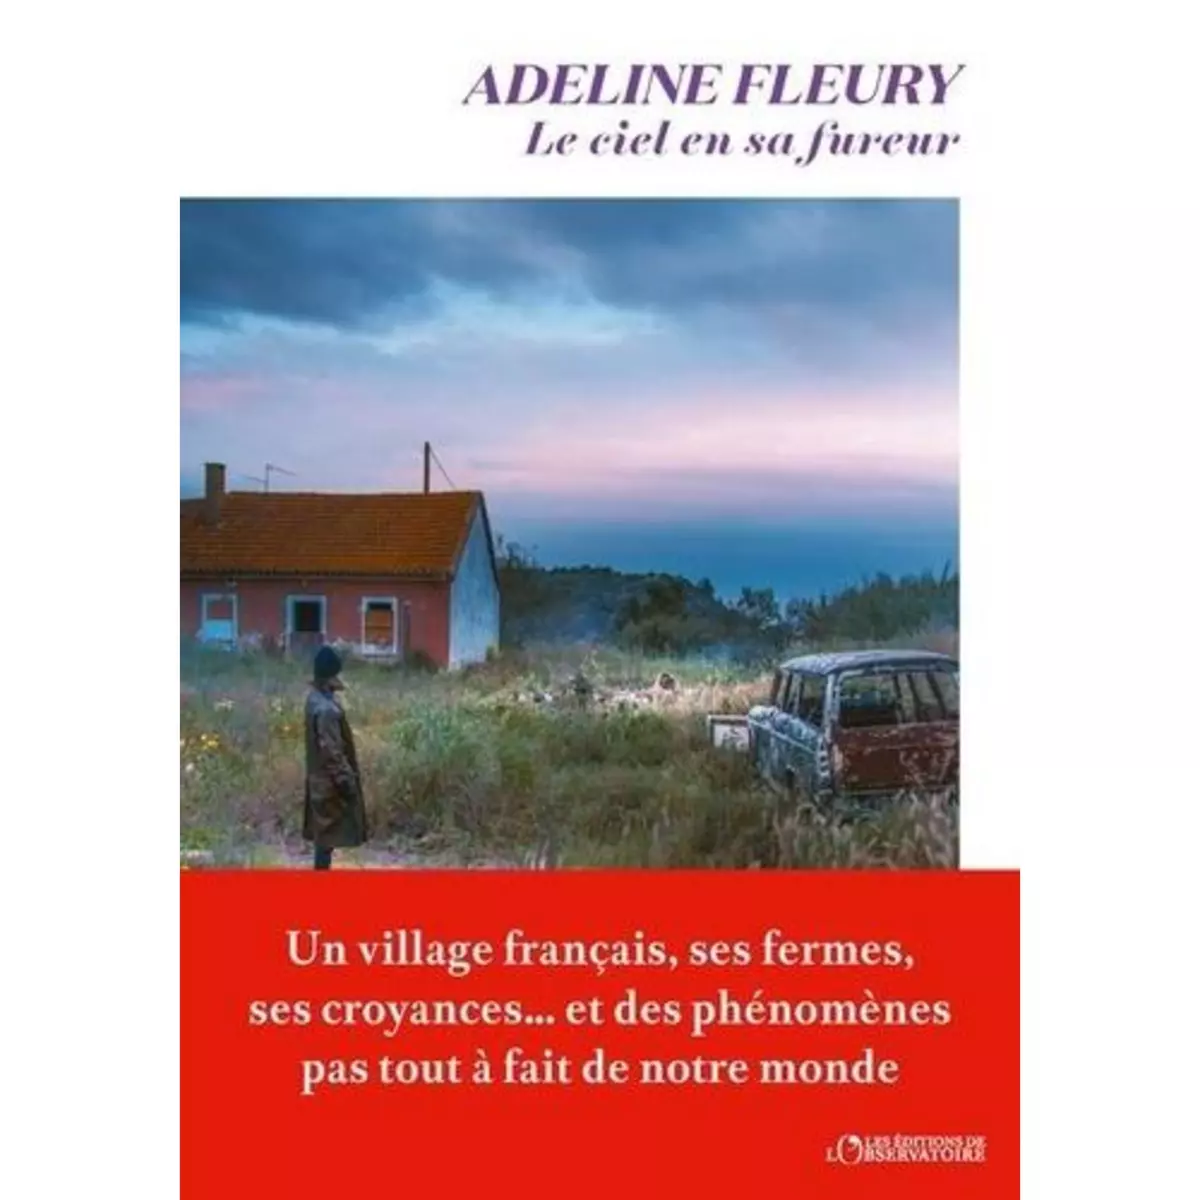  LE CIEL EN SA FUREUR, Fleury Adeline